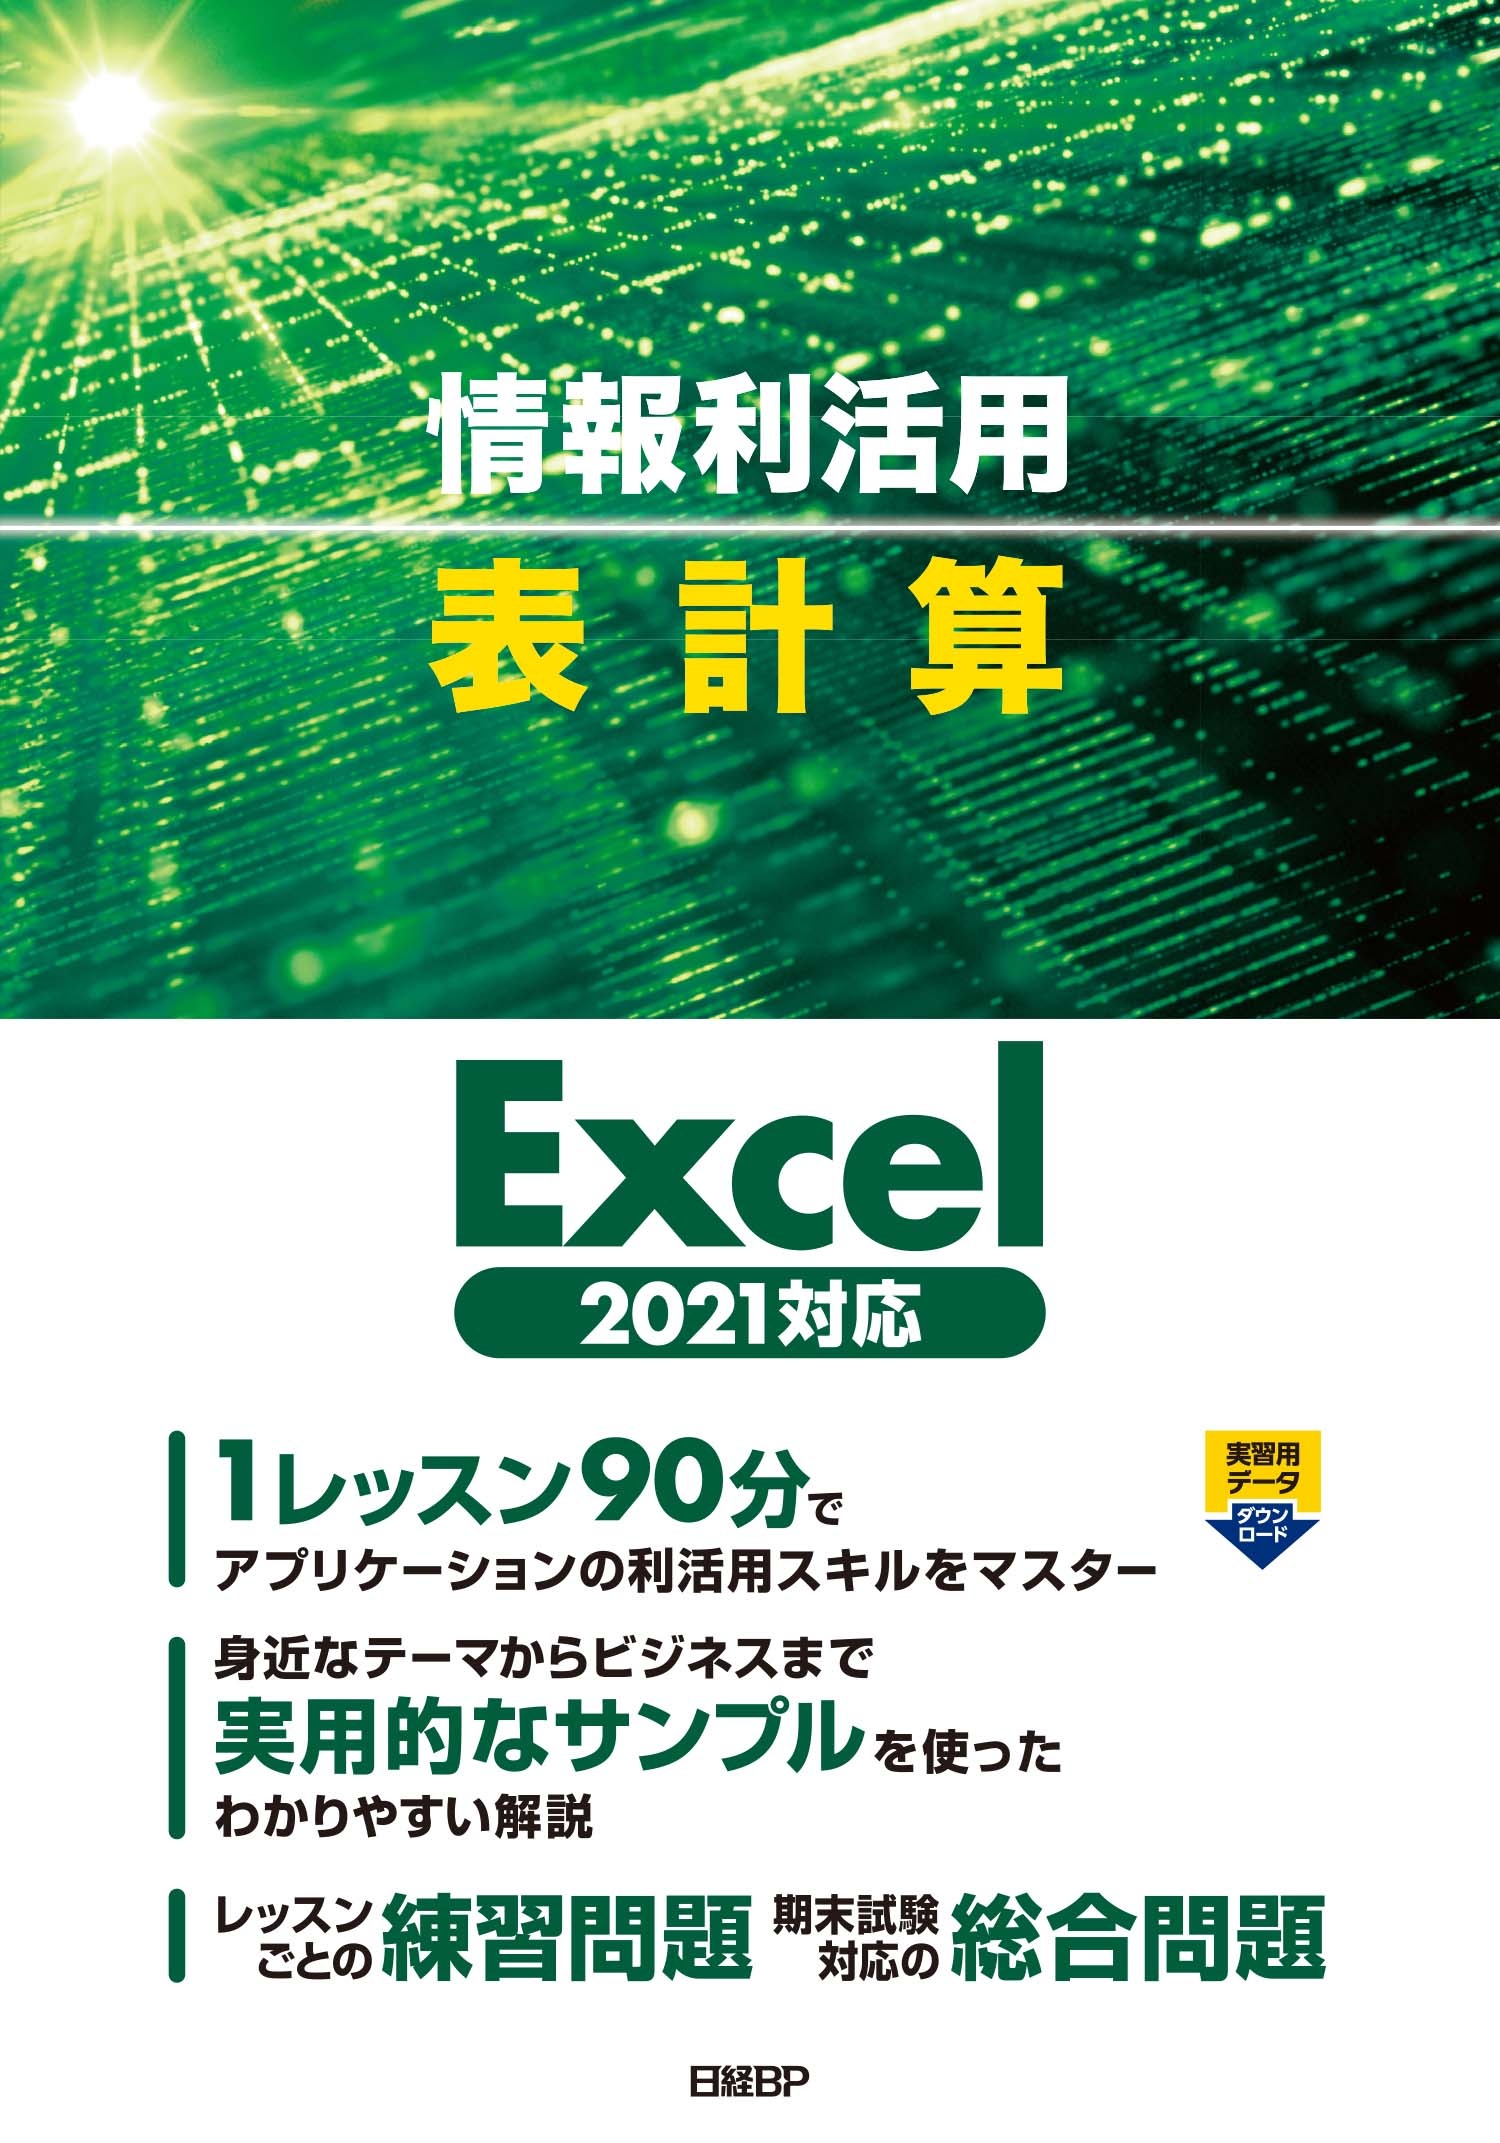 『情報利活用 表作成 Excel 2021対応』実習用データと練習・総合問題の解答のダウンロード